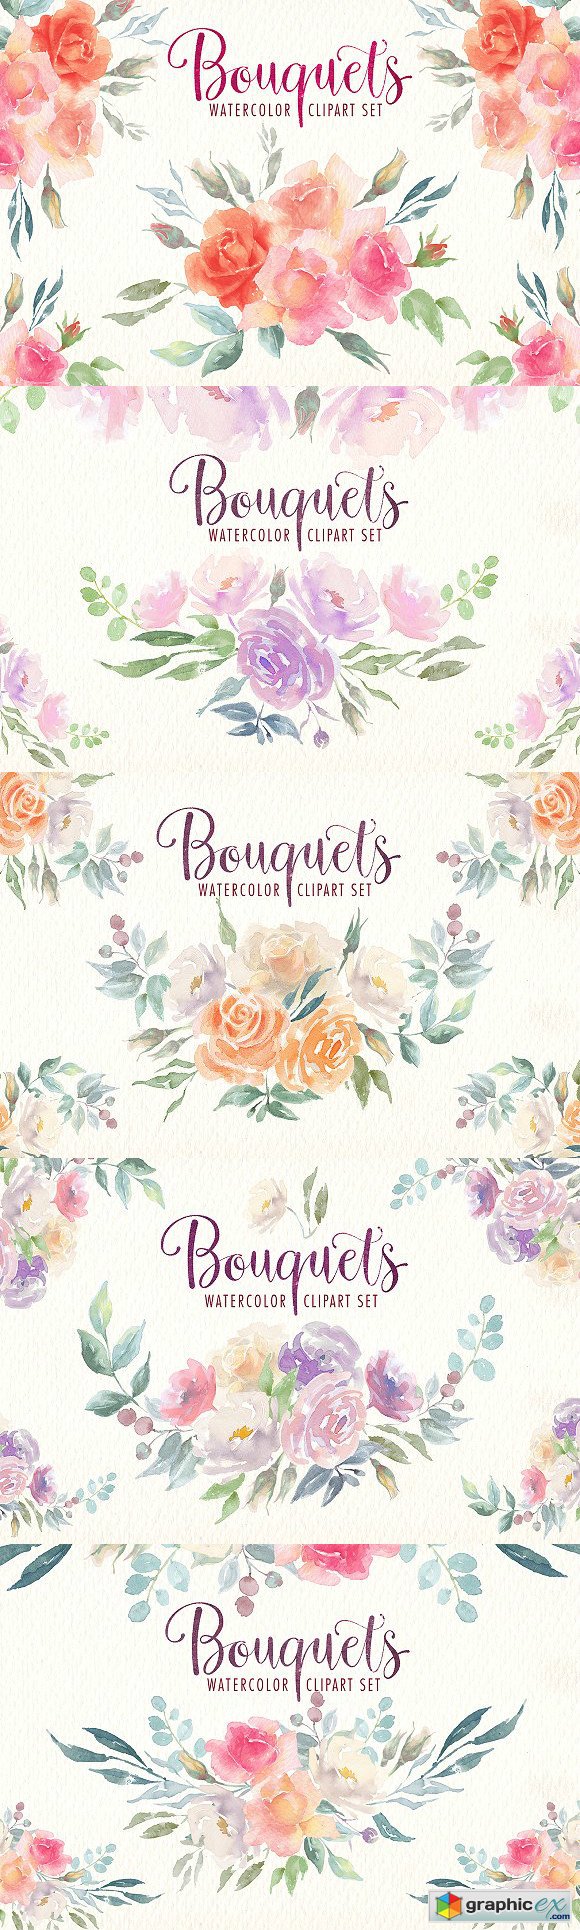 Watercolor bouquets clipart set